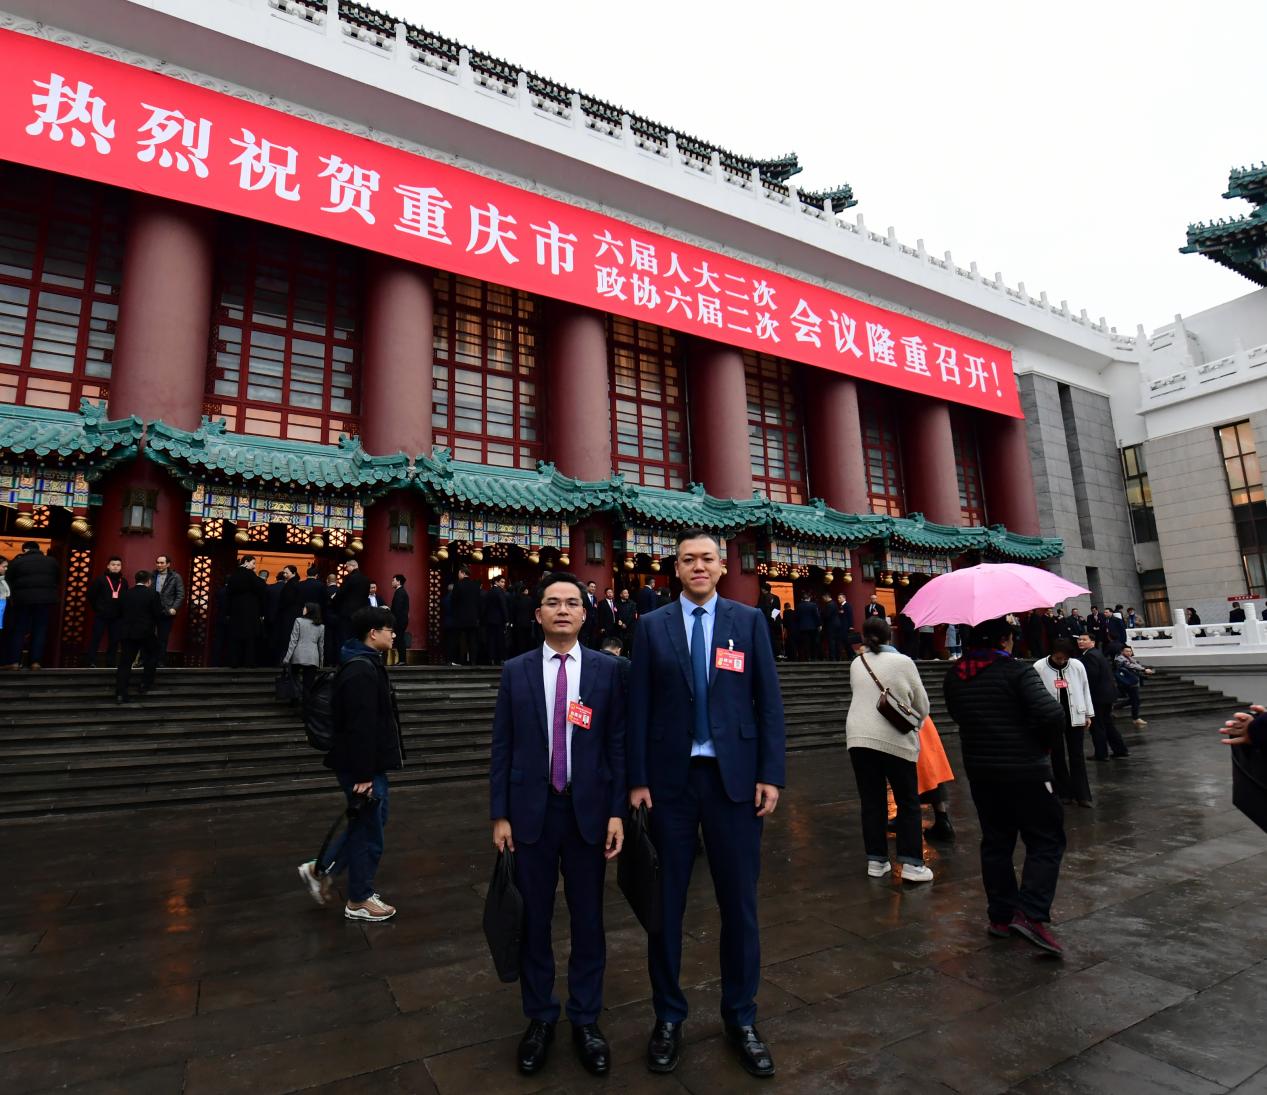 重庆巨成集团总经理黄怡霖参加重庆市第六届人民代表大会第二次会议